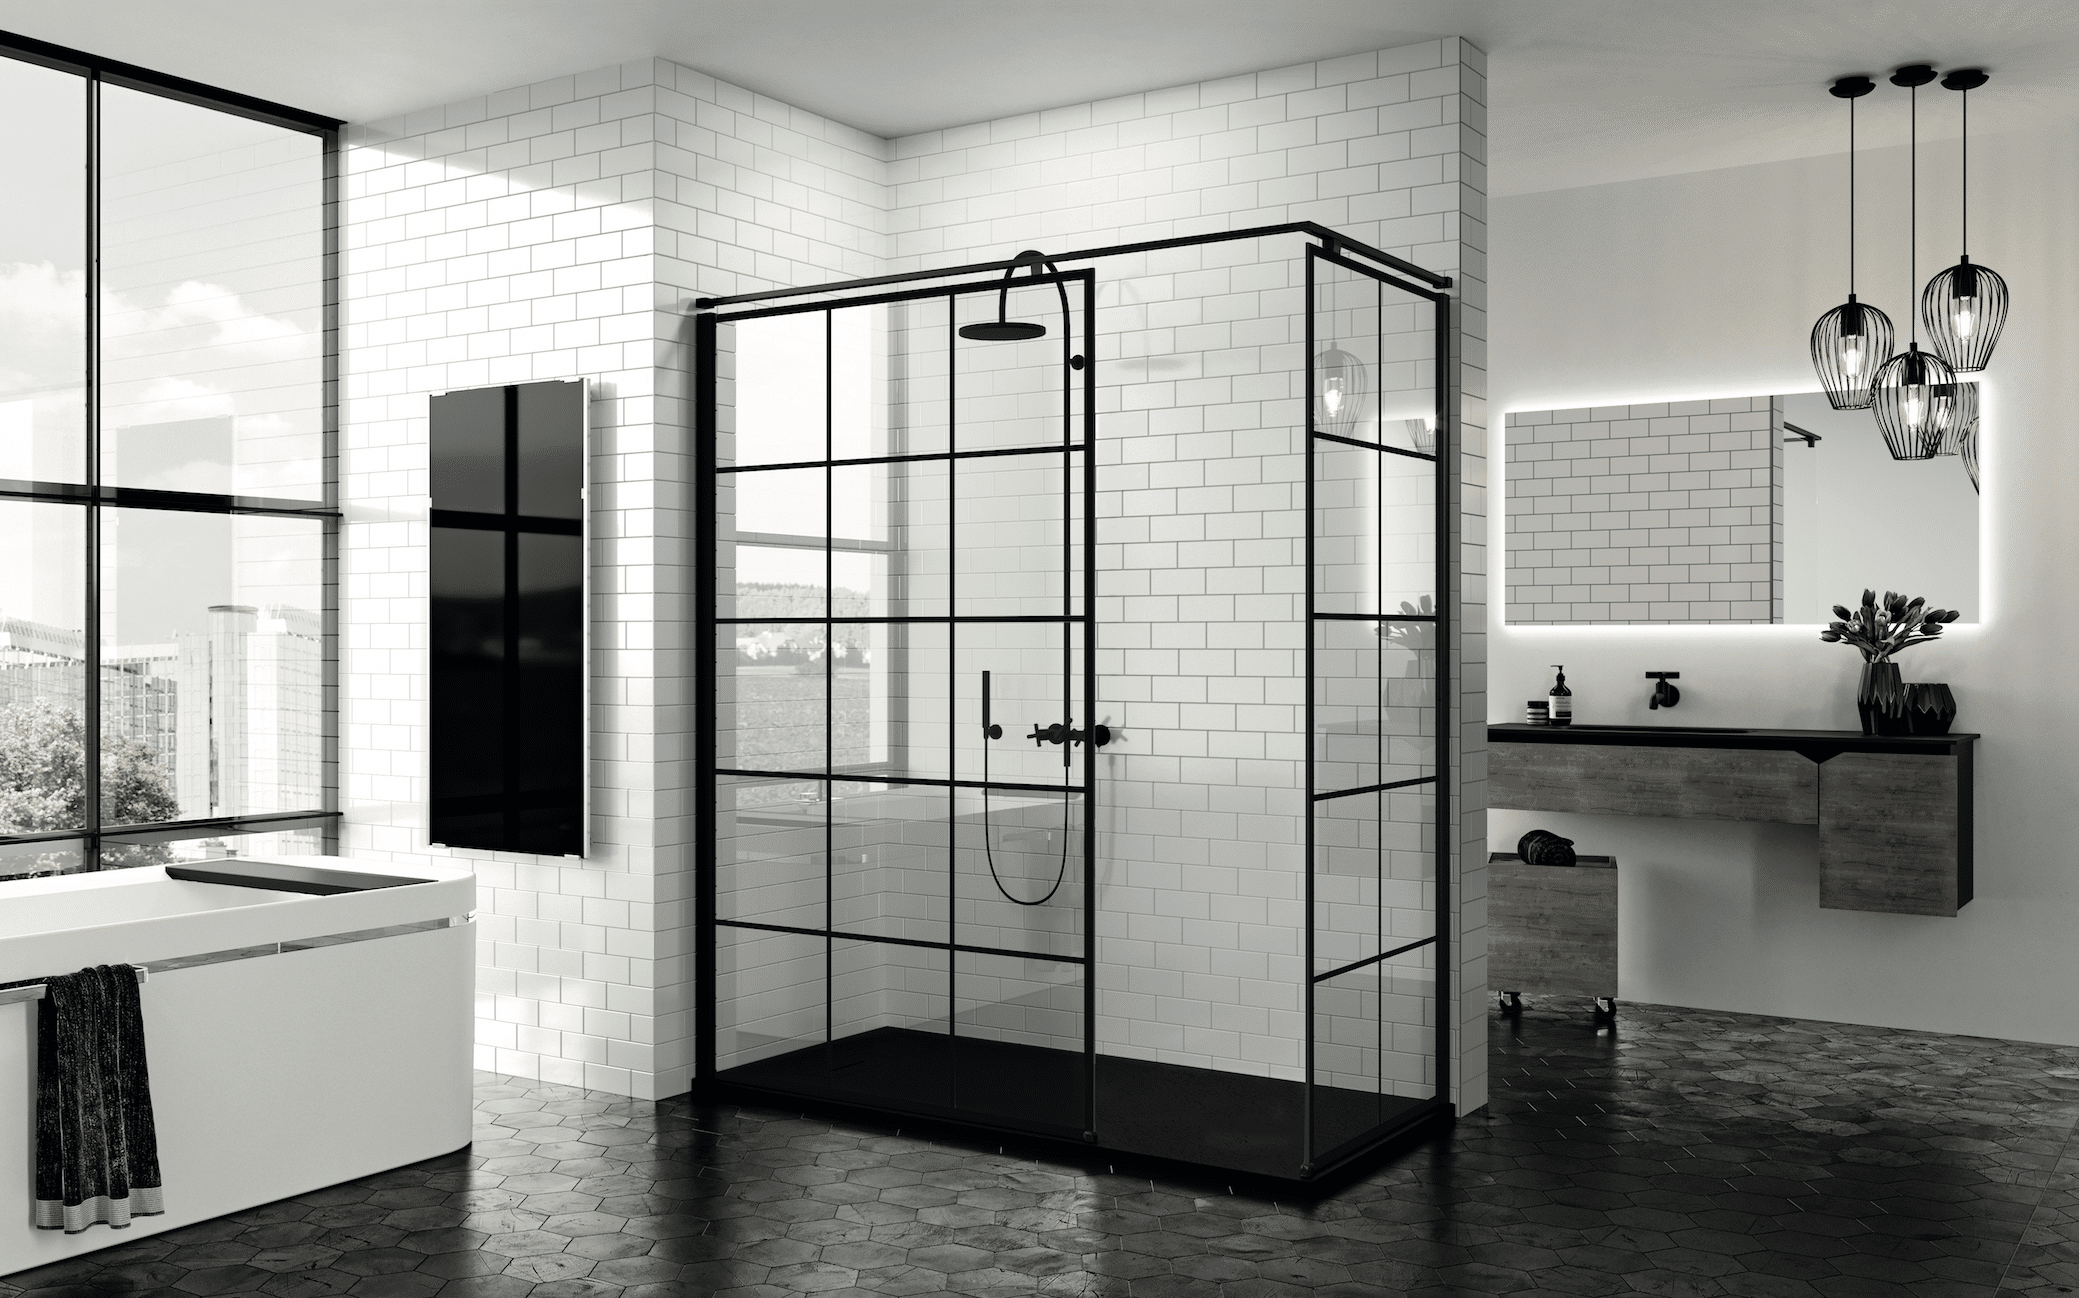 Fliesendorf zeigt eine Badezimmer mit großer Walkin-Dusche, Badewanne und Waschtisch in schwarz-weißem Design.